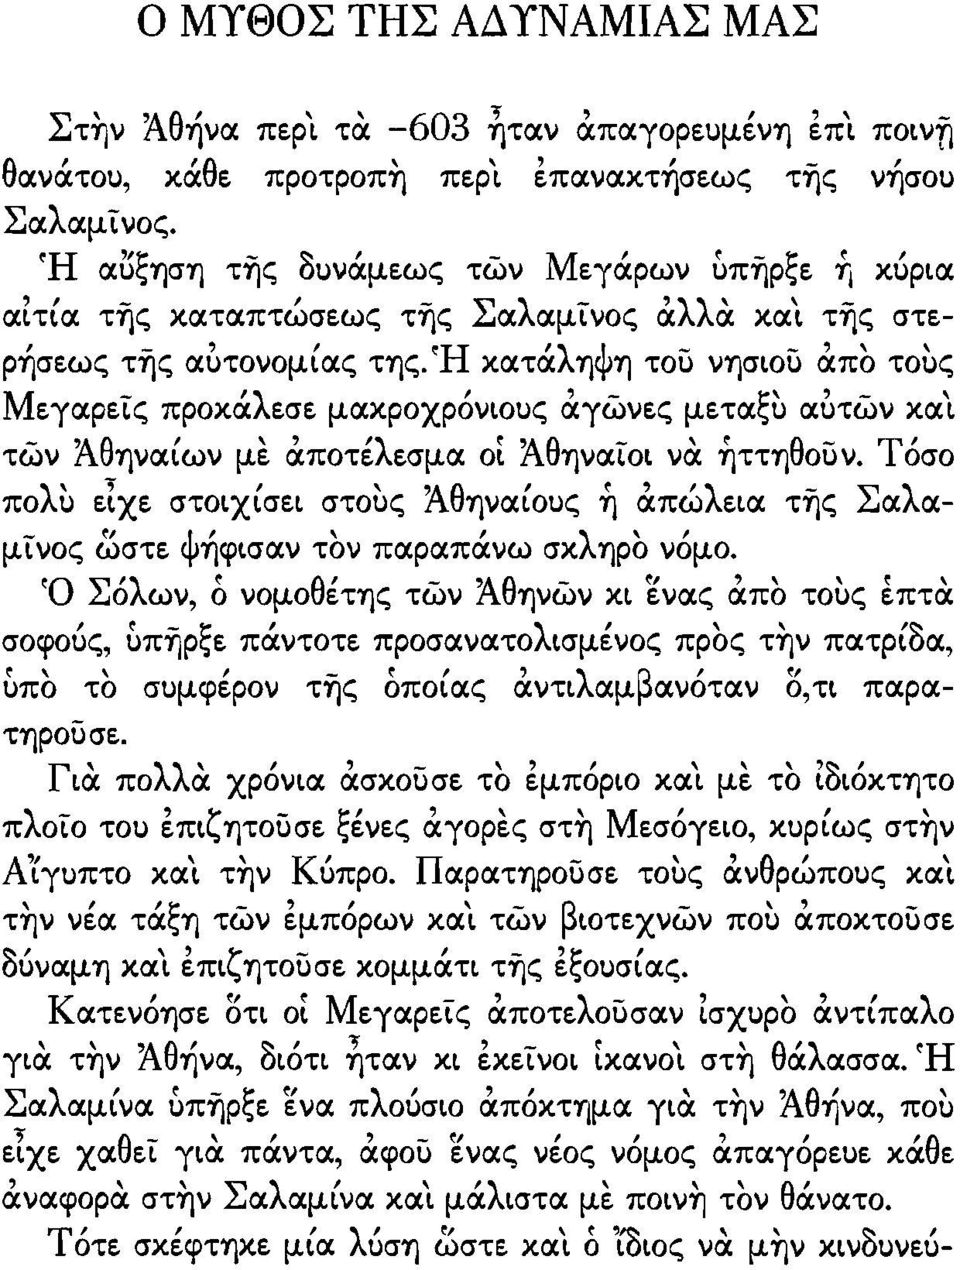 Ή κατάληψη του νησιου απο τοuς Μεγαρεις προκάλεσε μακροχρόνιοuς αγωνες μεταςu αδτων και των Άθηναίων με αποτέλεσμα οί Άθηναιοι να ήττηθουν.